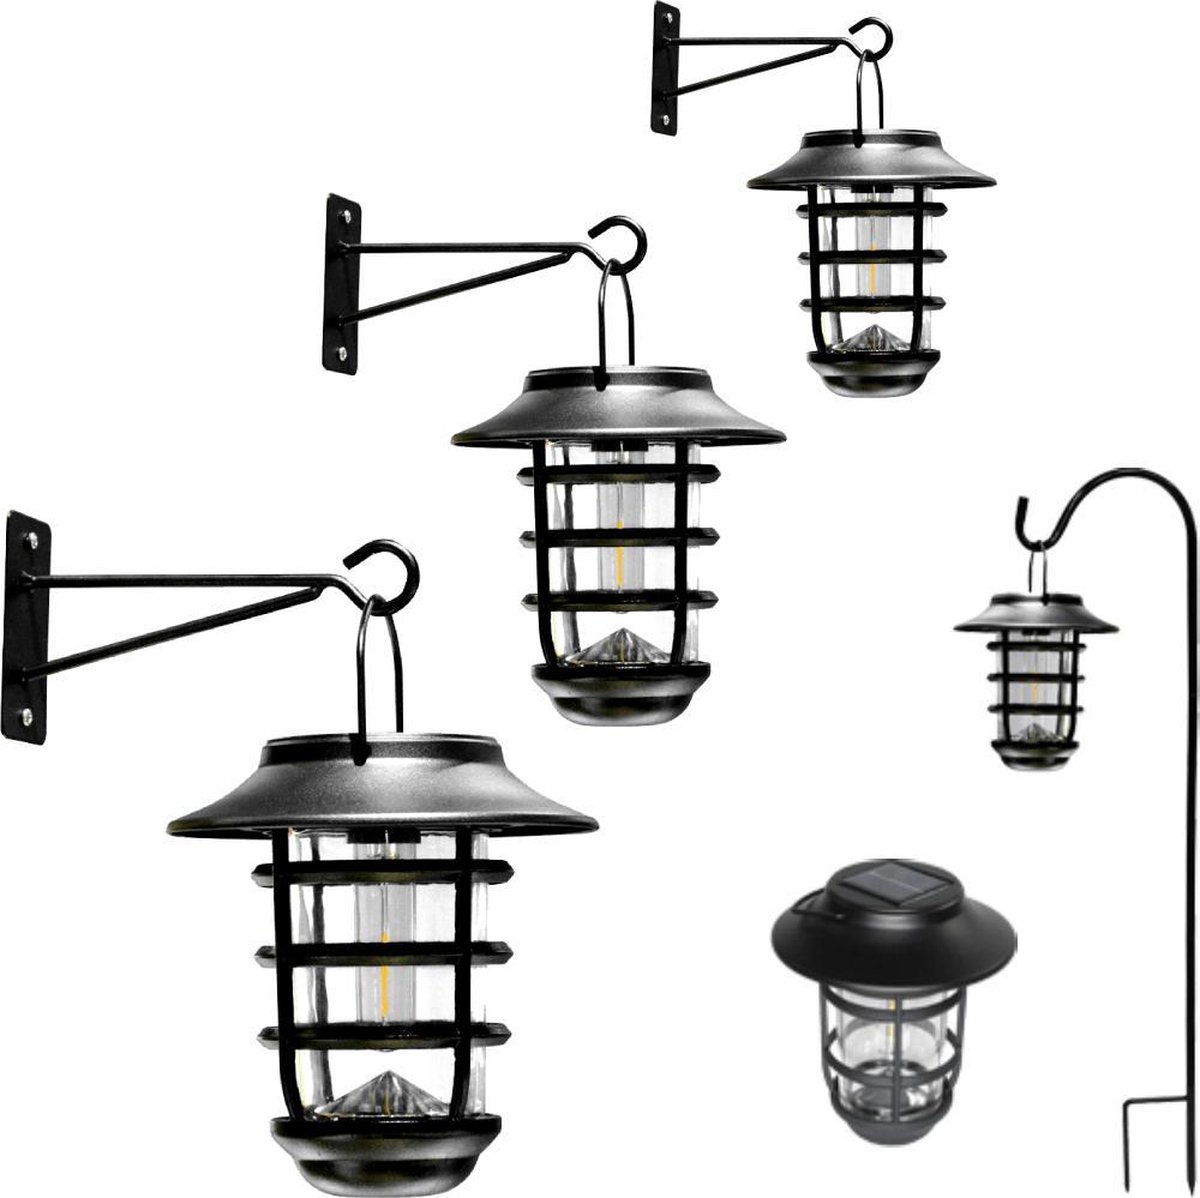 Solar wandlamp 'Sting' - Voordeelset 3 stuks - Trendy zwart - Metaal - Met schemersensor - Buitenlampen zonne-energie - RexTech